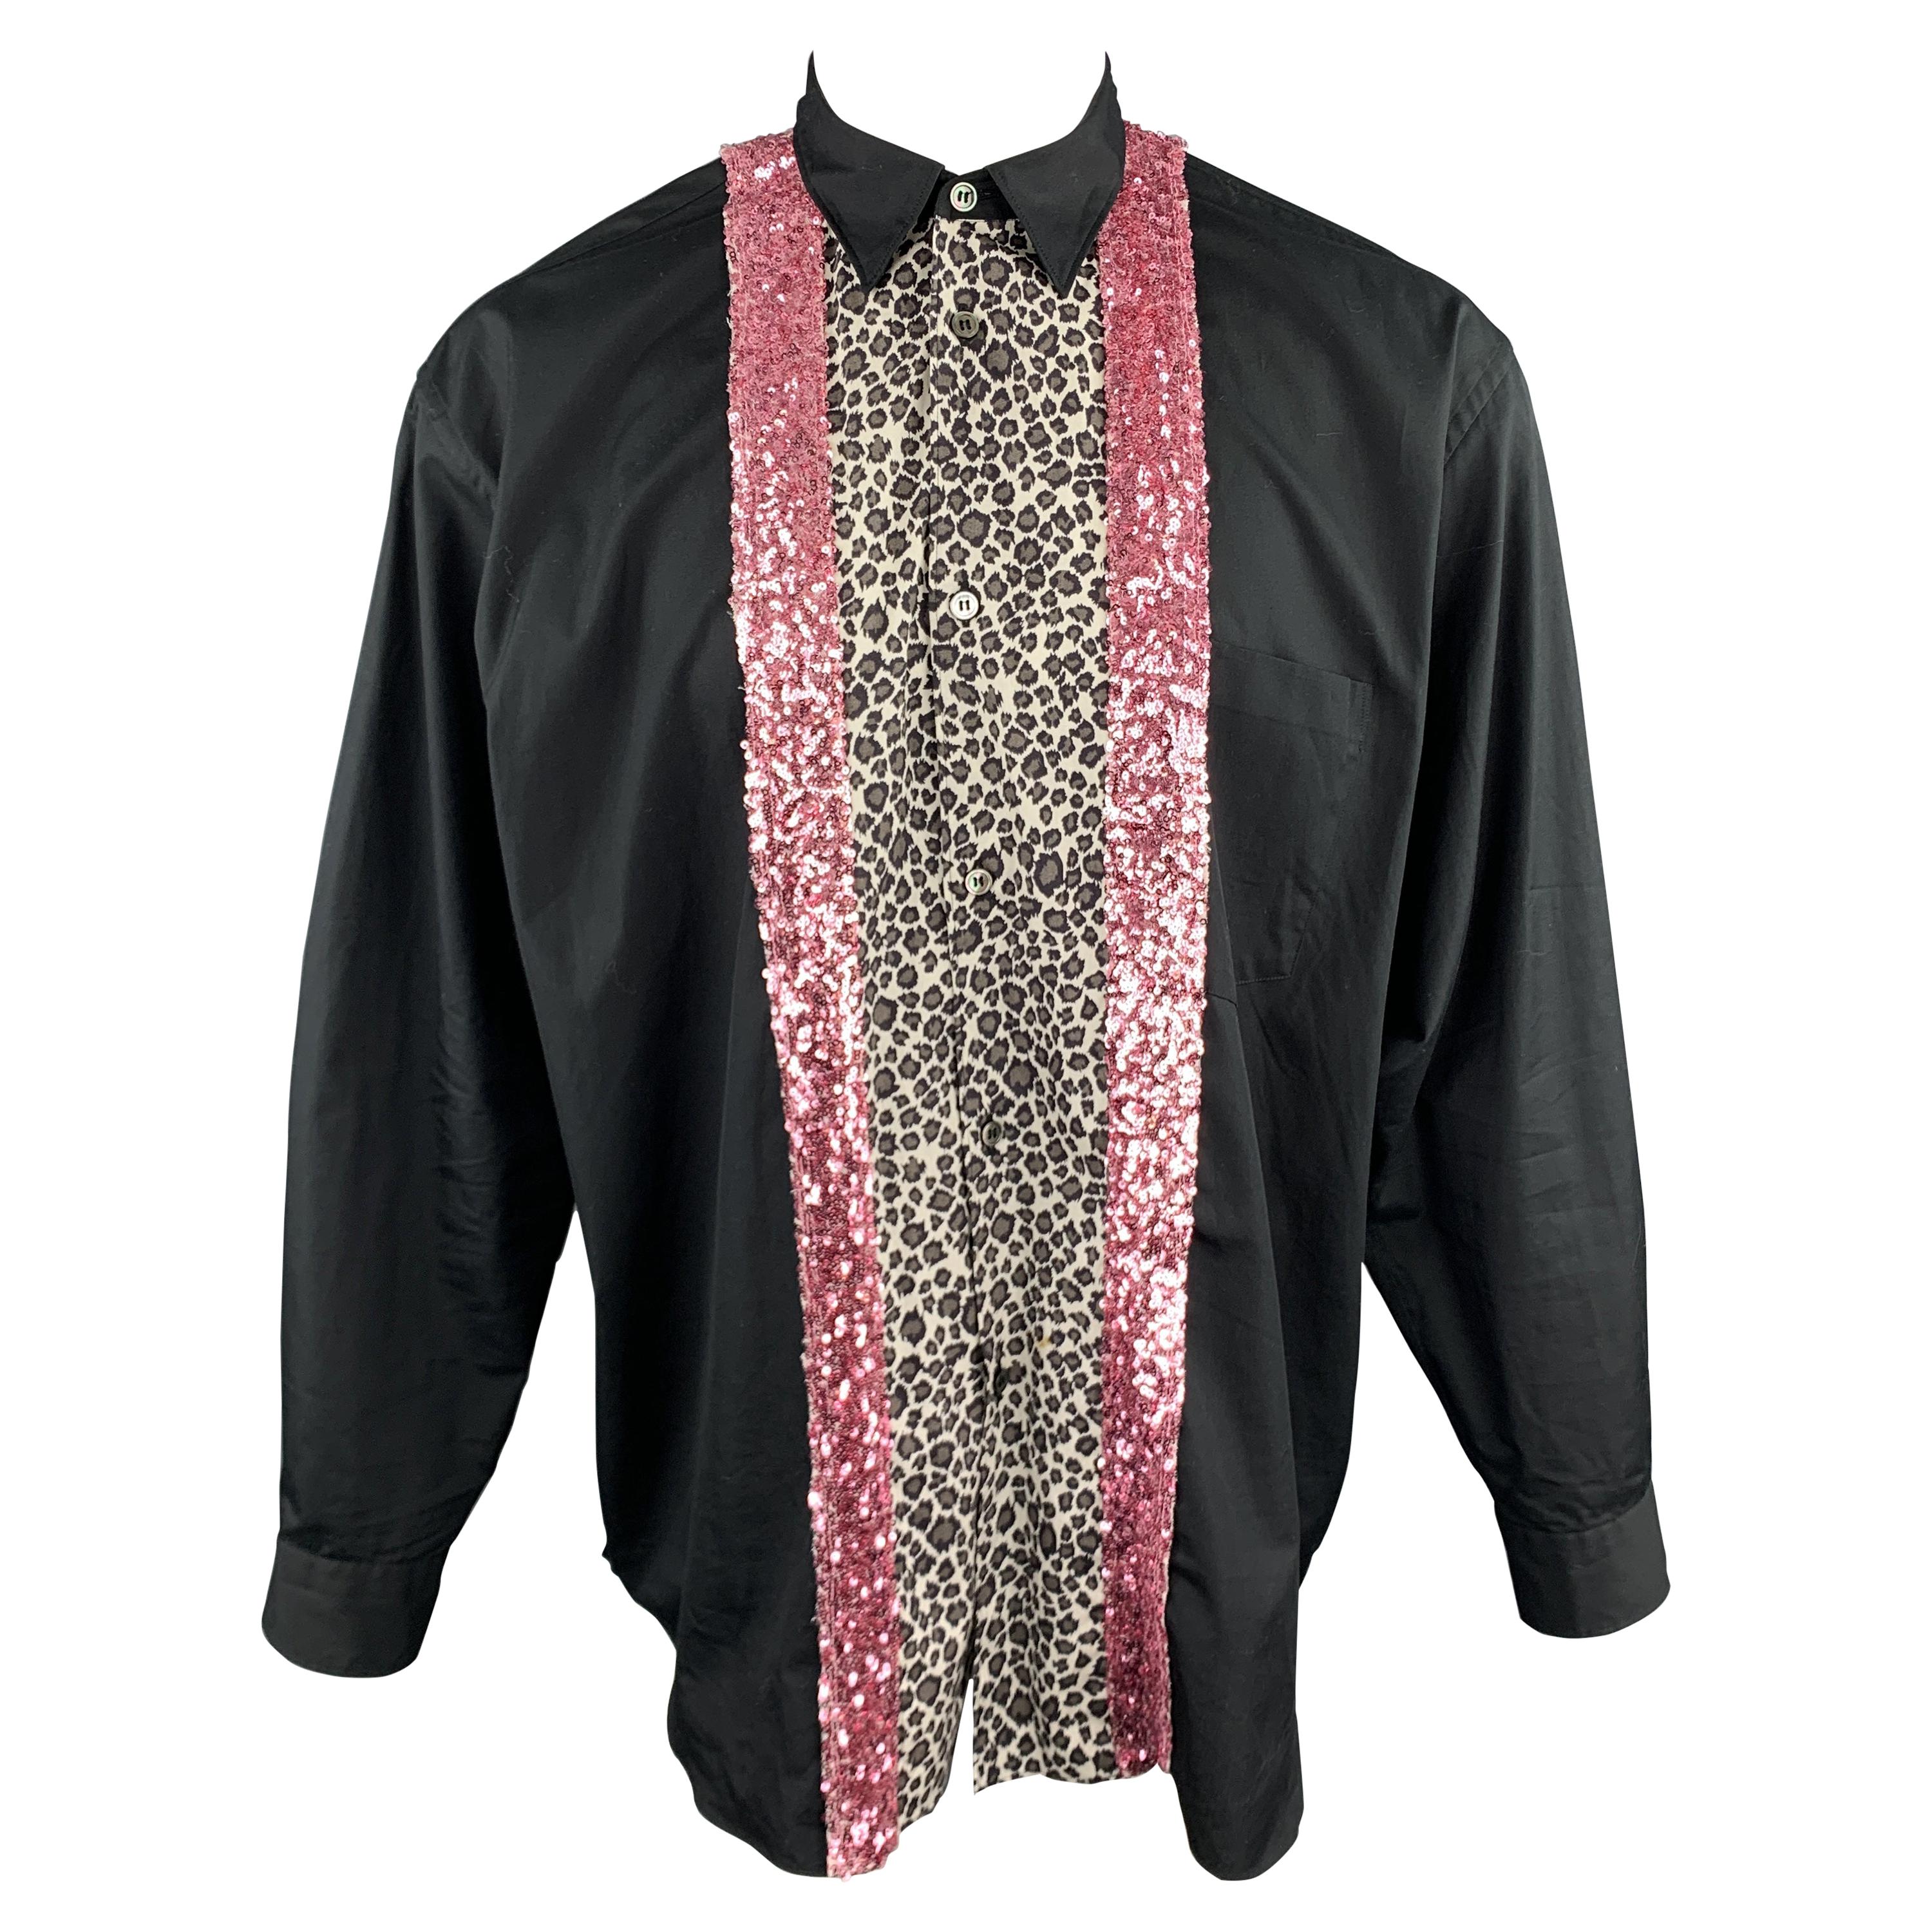 COMME des GARCONS HOMME PLUS Size S Black Cotton Leopard & Pink Sequin Shirt